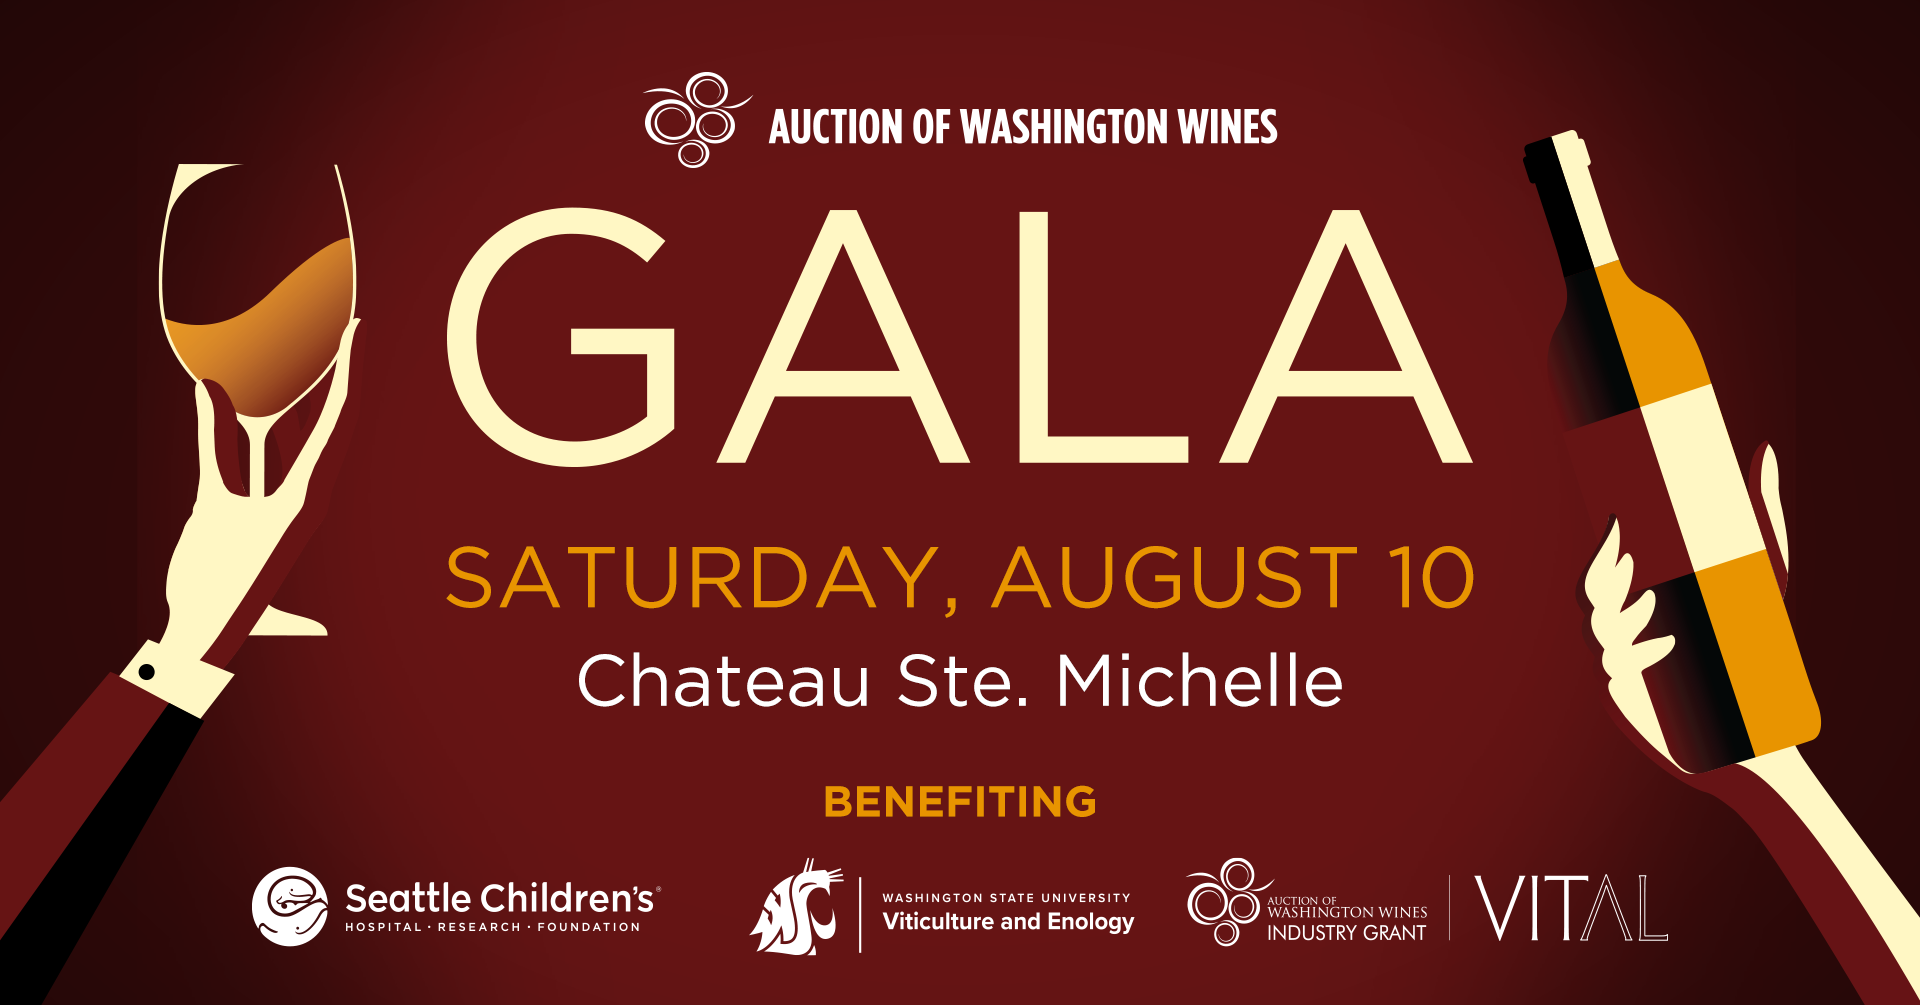 Auction of Washington Wines GALA image